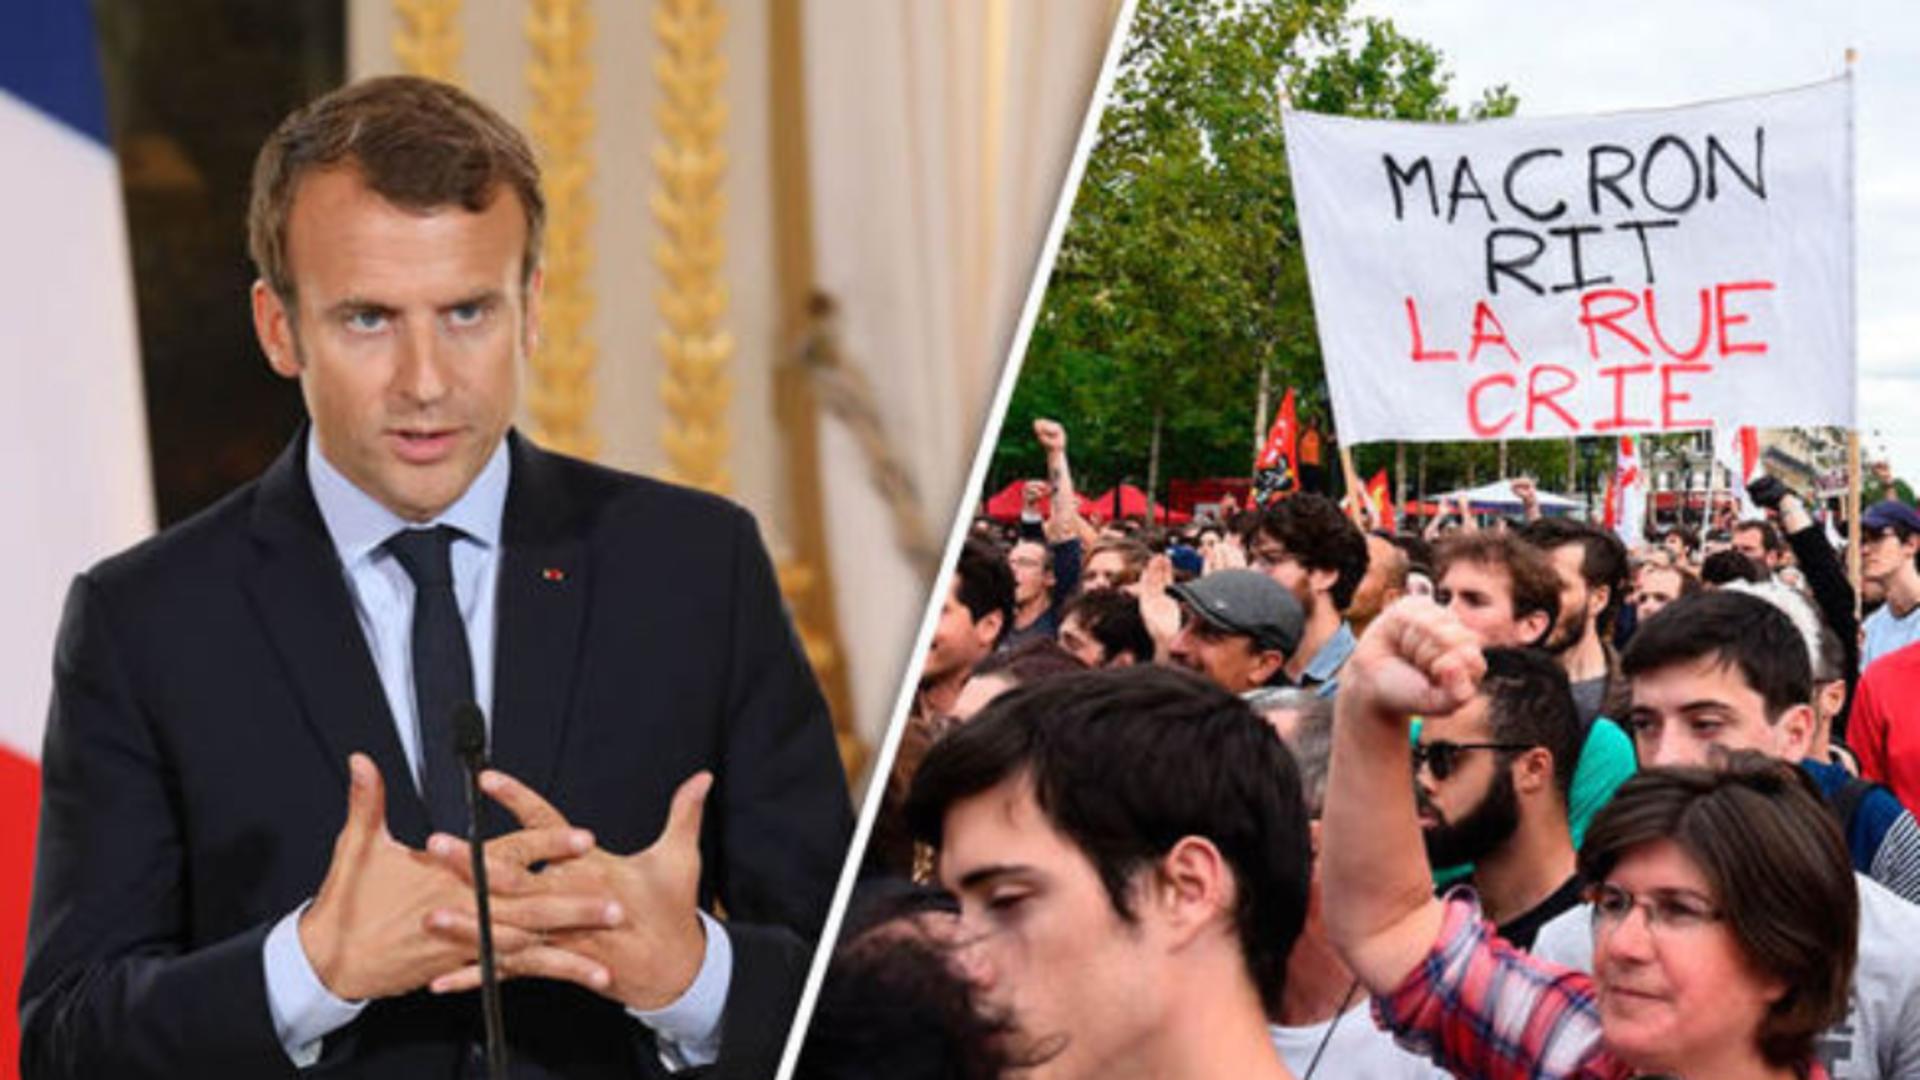 Proteste uriașe după reforma pensiilor, în timpul discursului lui Macron - Ce pensii speciale au fost tăiate în Franța